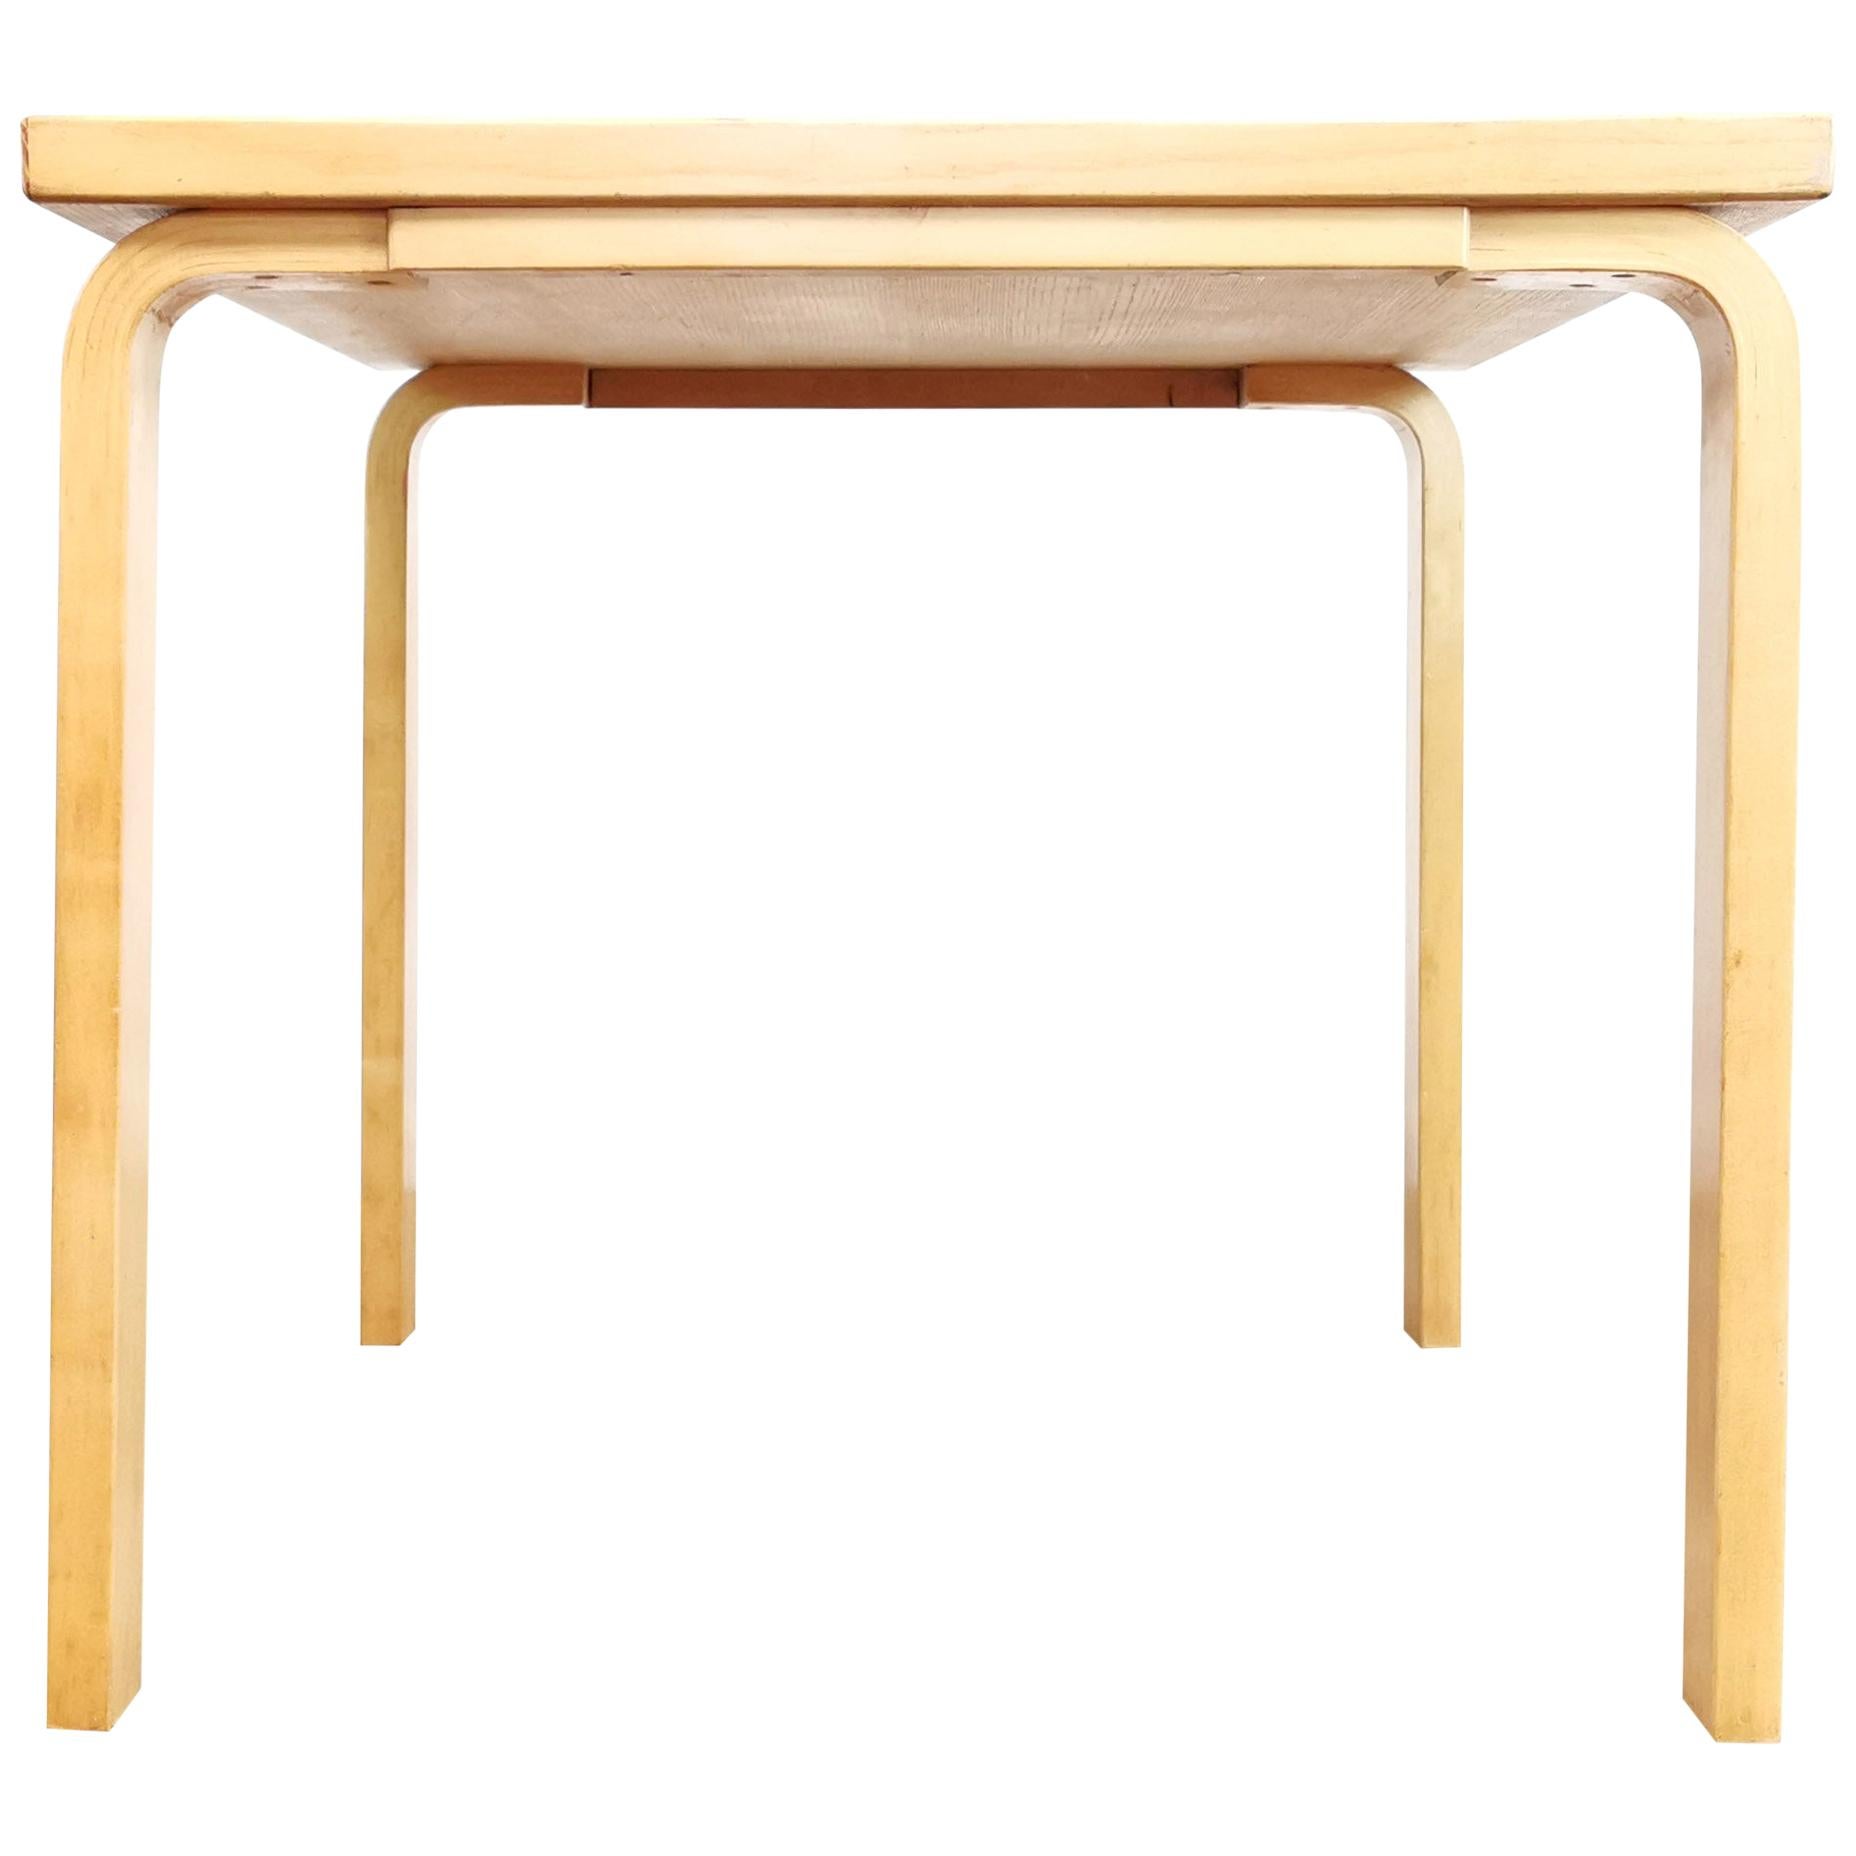 Midcentury Alvar Aalto for Artek Birchwood Square Table Desk